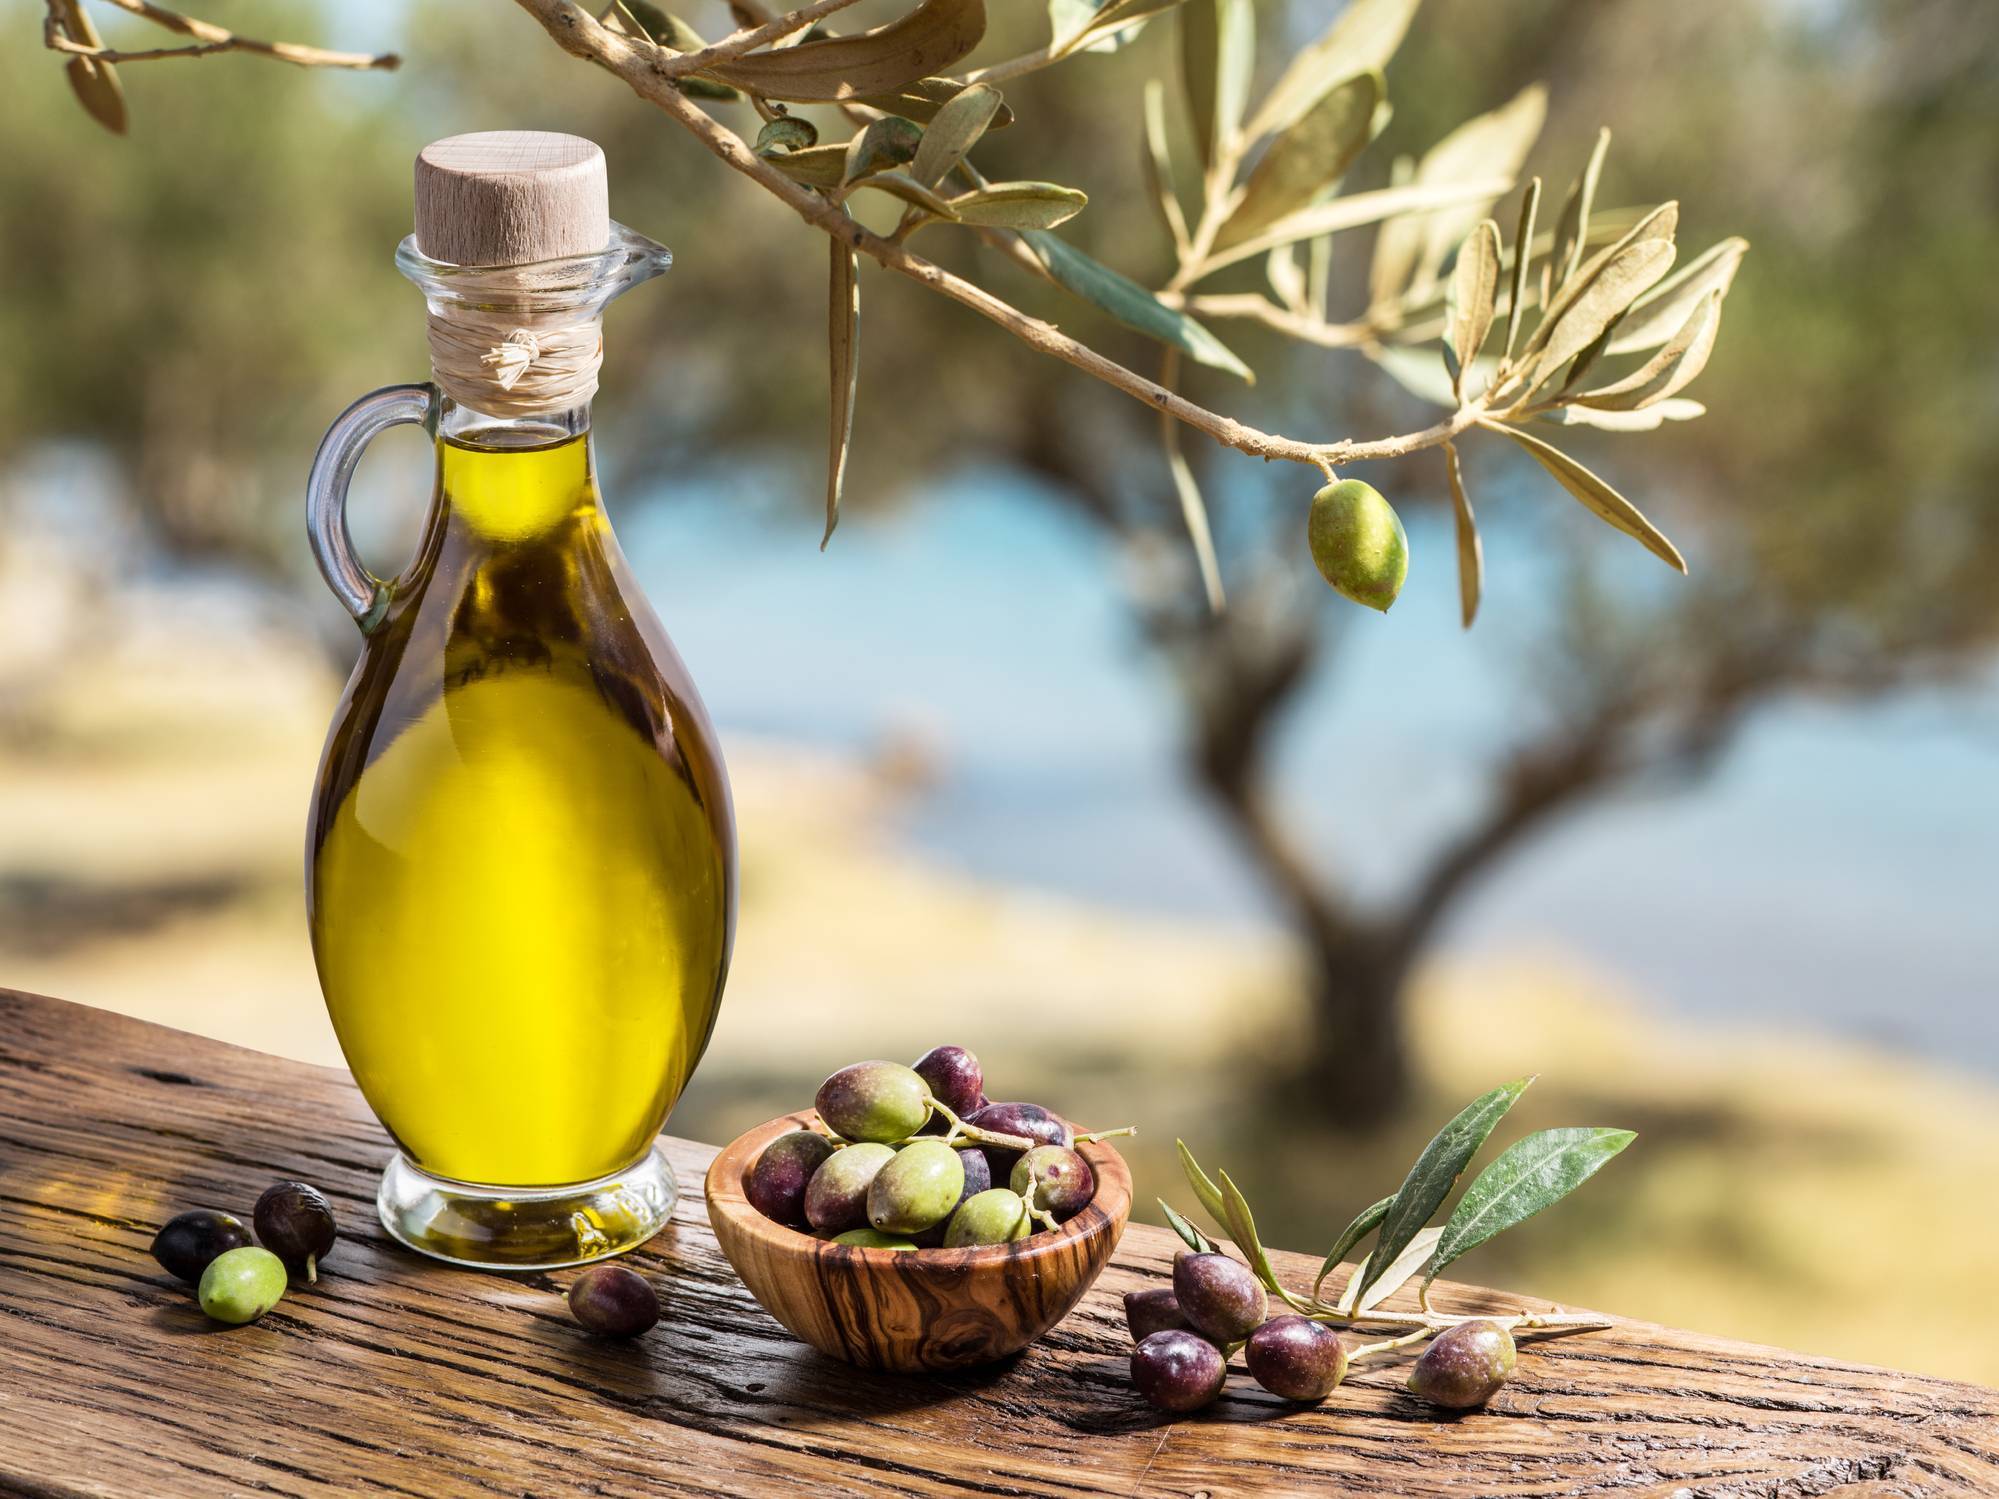 Les recettes méditerranéennes qui sentent l'huile d'olive